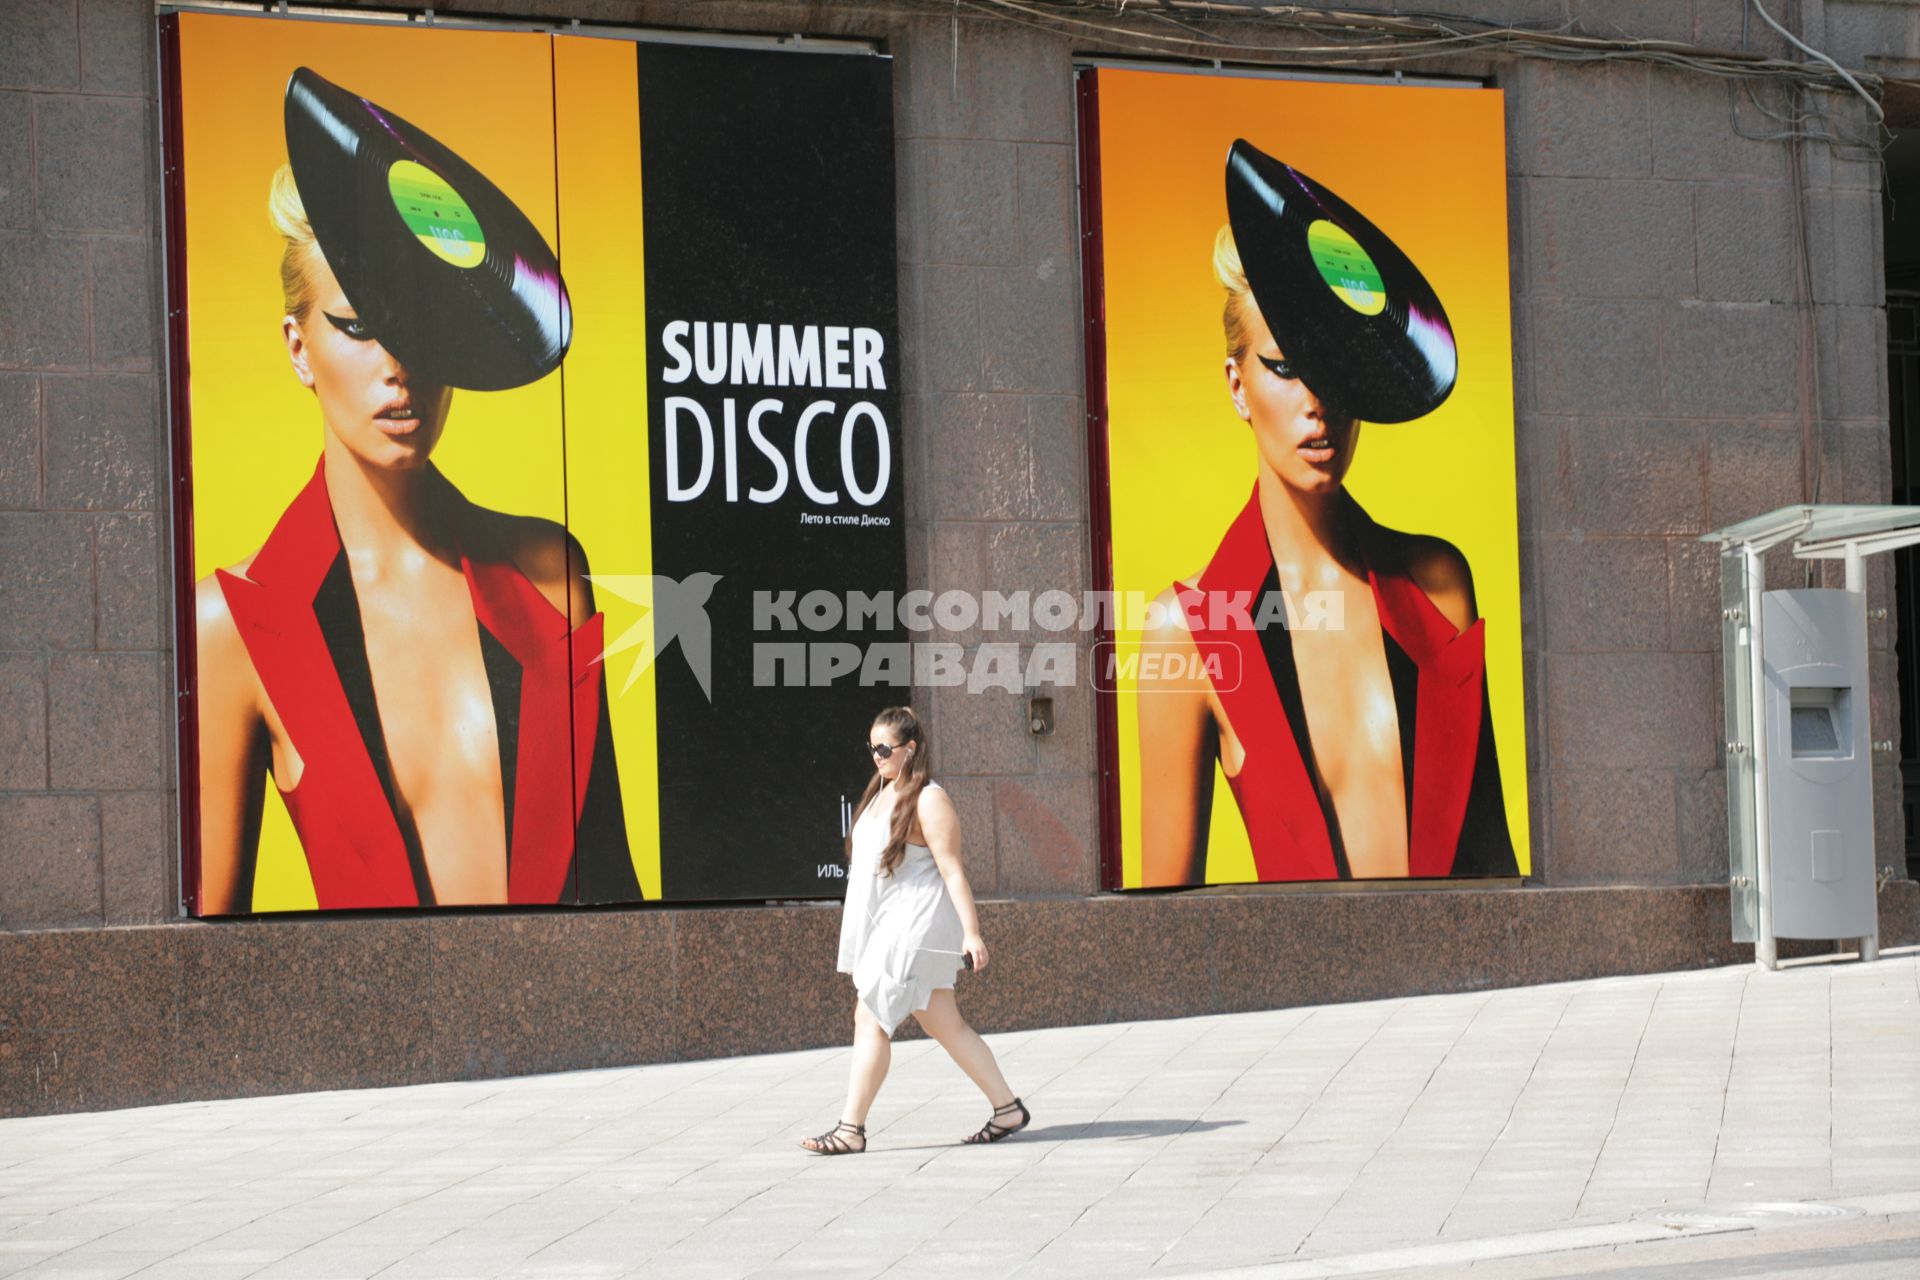 Наружная реклама. На снимке:девушка идет мимо рекалмных баннеров `Summer disco`